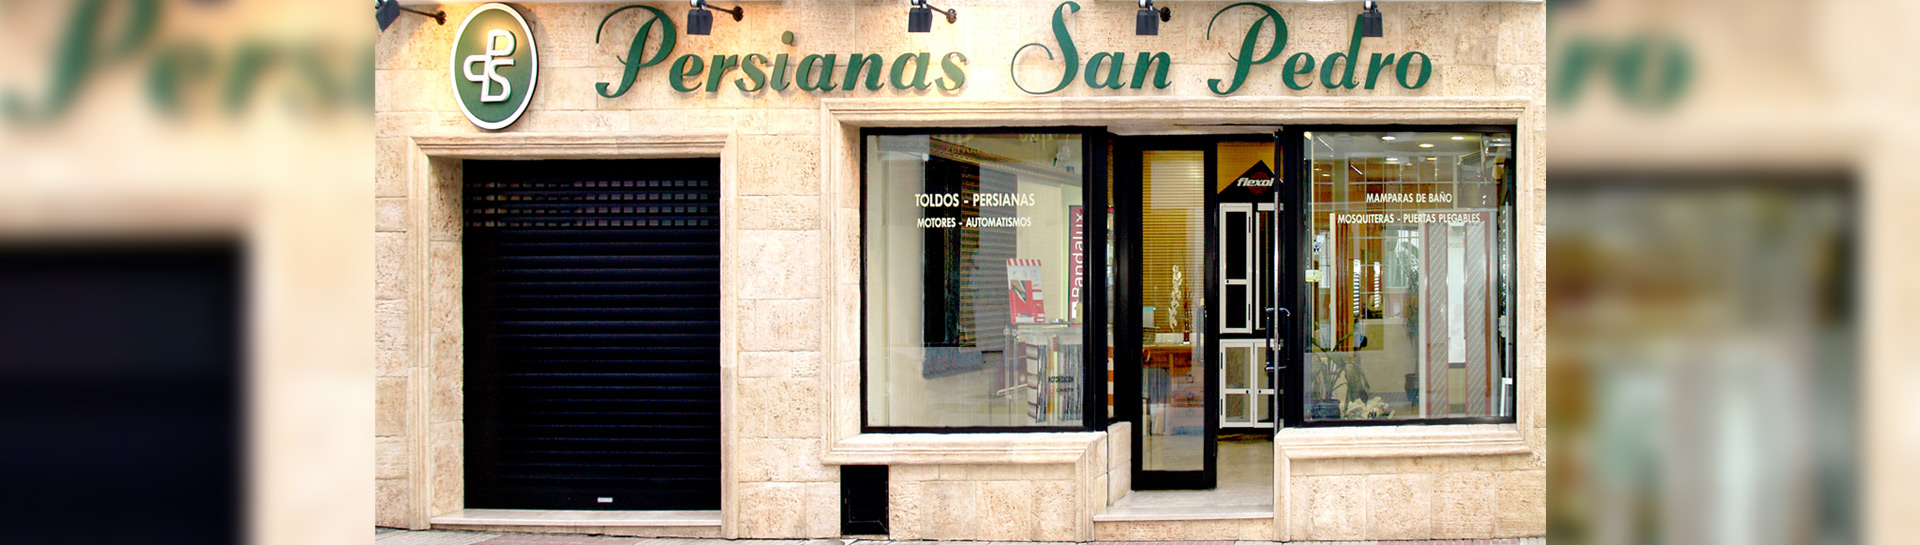 Fachada de tienda "Persianas San Pedro" con un escaparate que muestra varios modelos de persianas y toldos, y una entrada abierta al público.